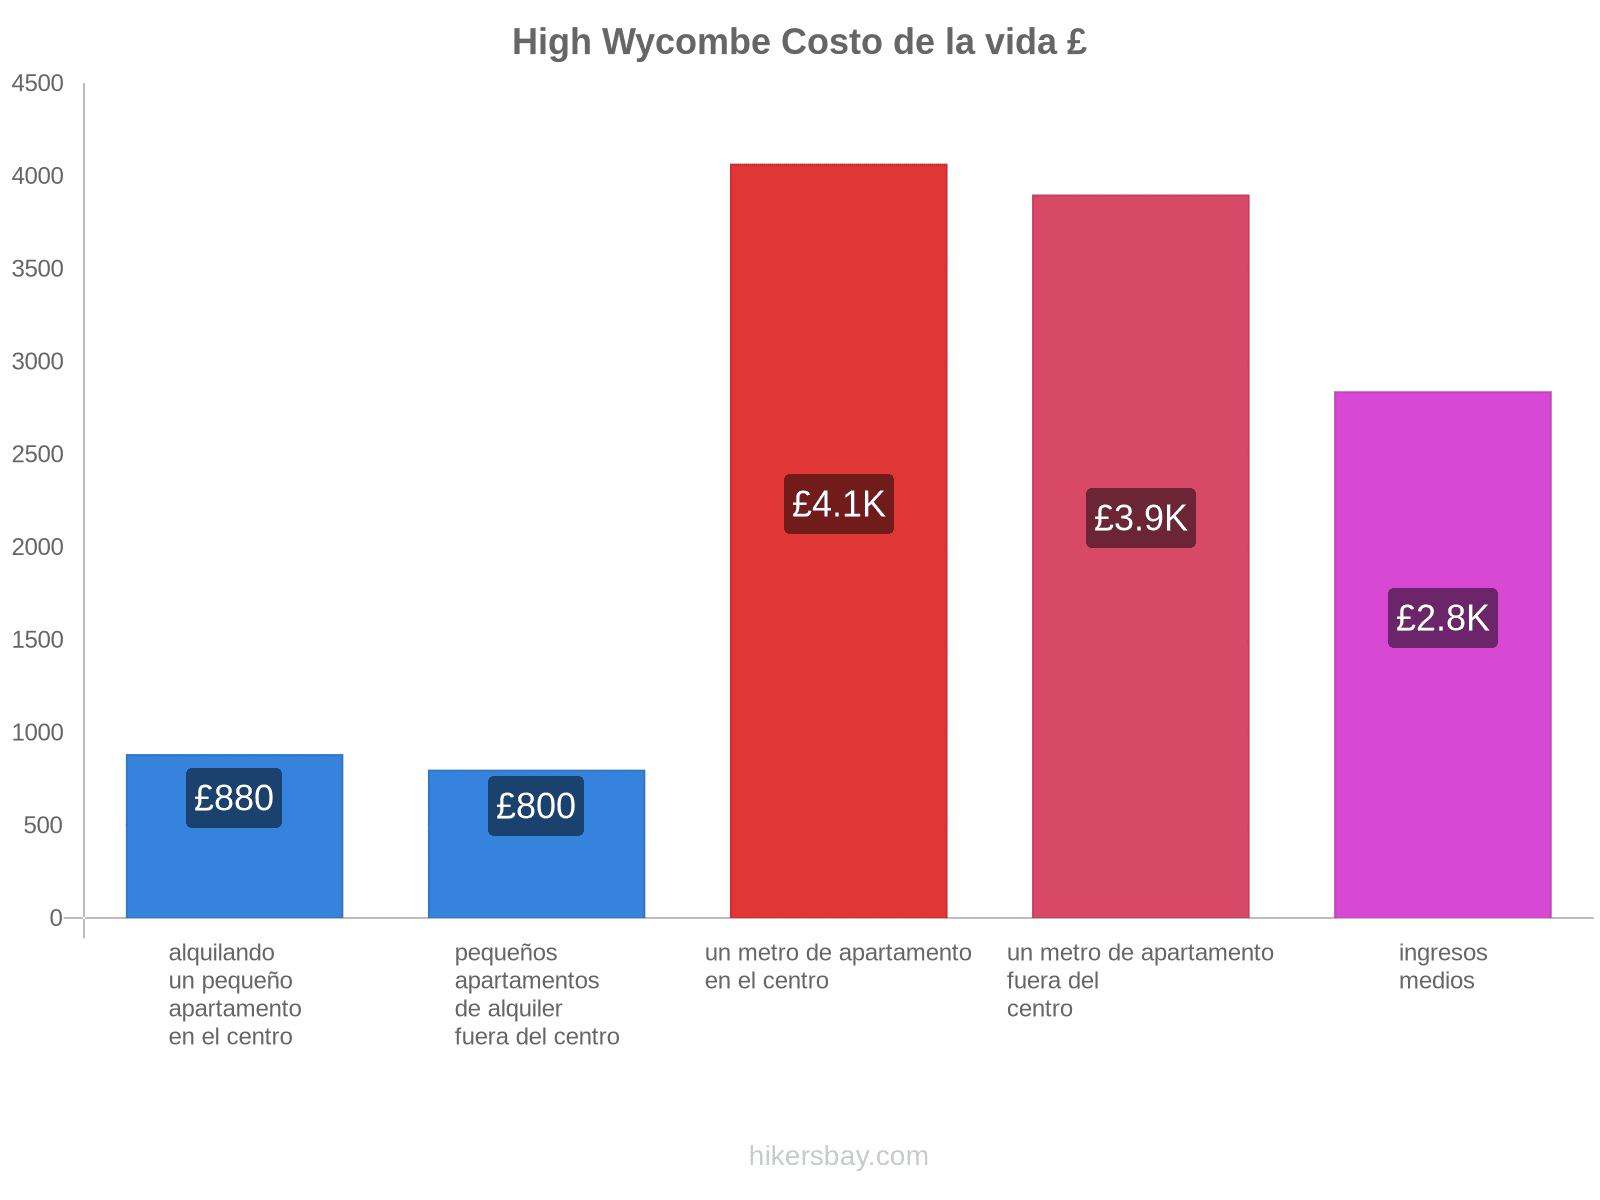 High Wycombe costo de la vida hikersbay.com